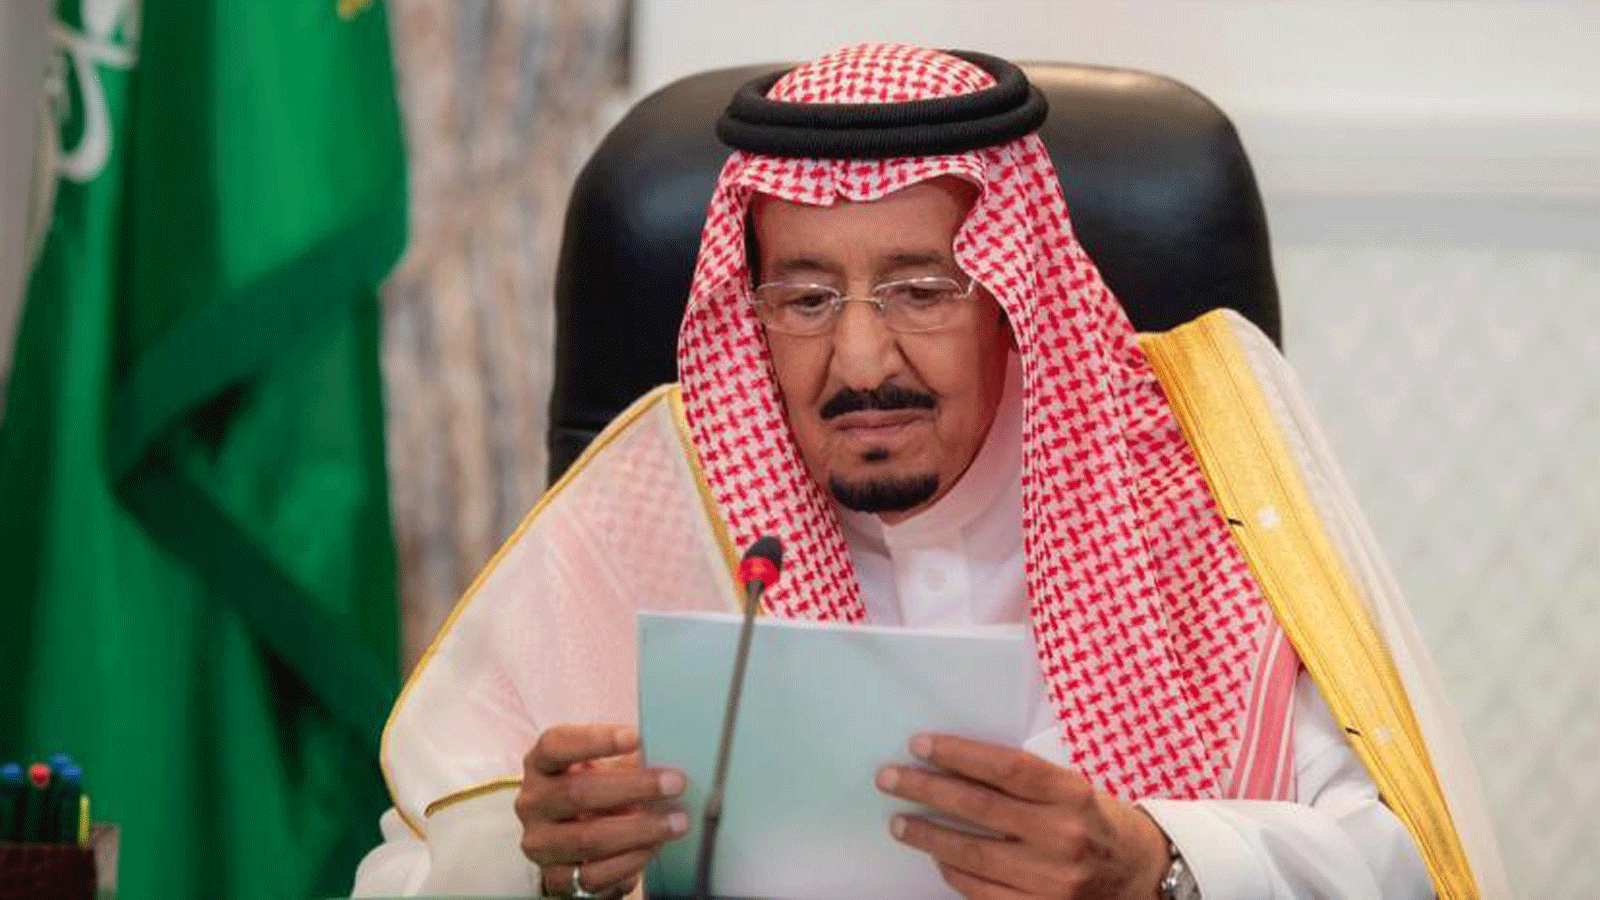 العاهل السعودي الملك سلمان بن عبدالعزيز